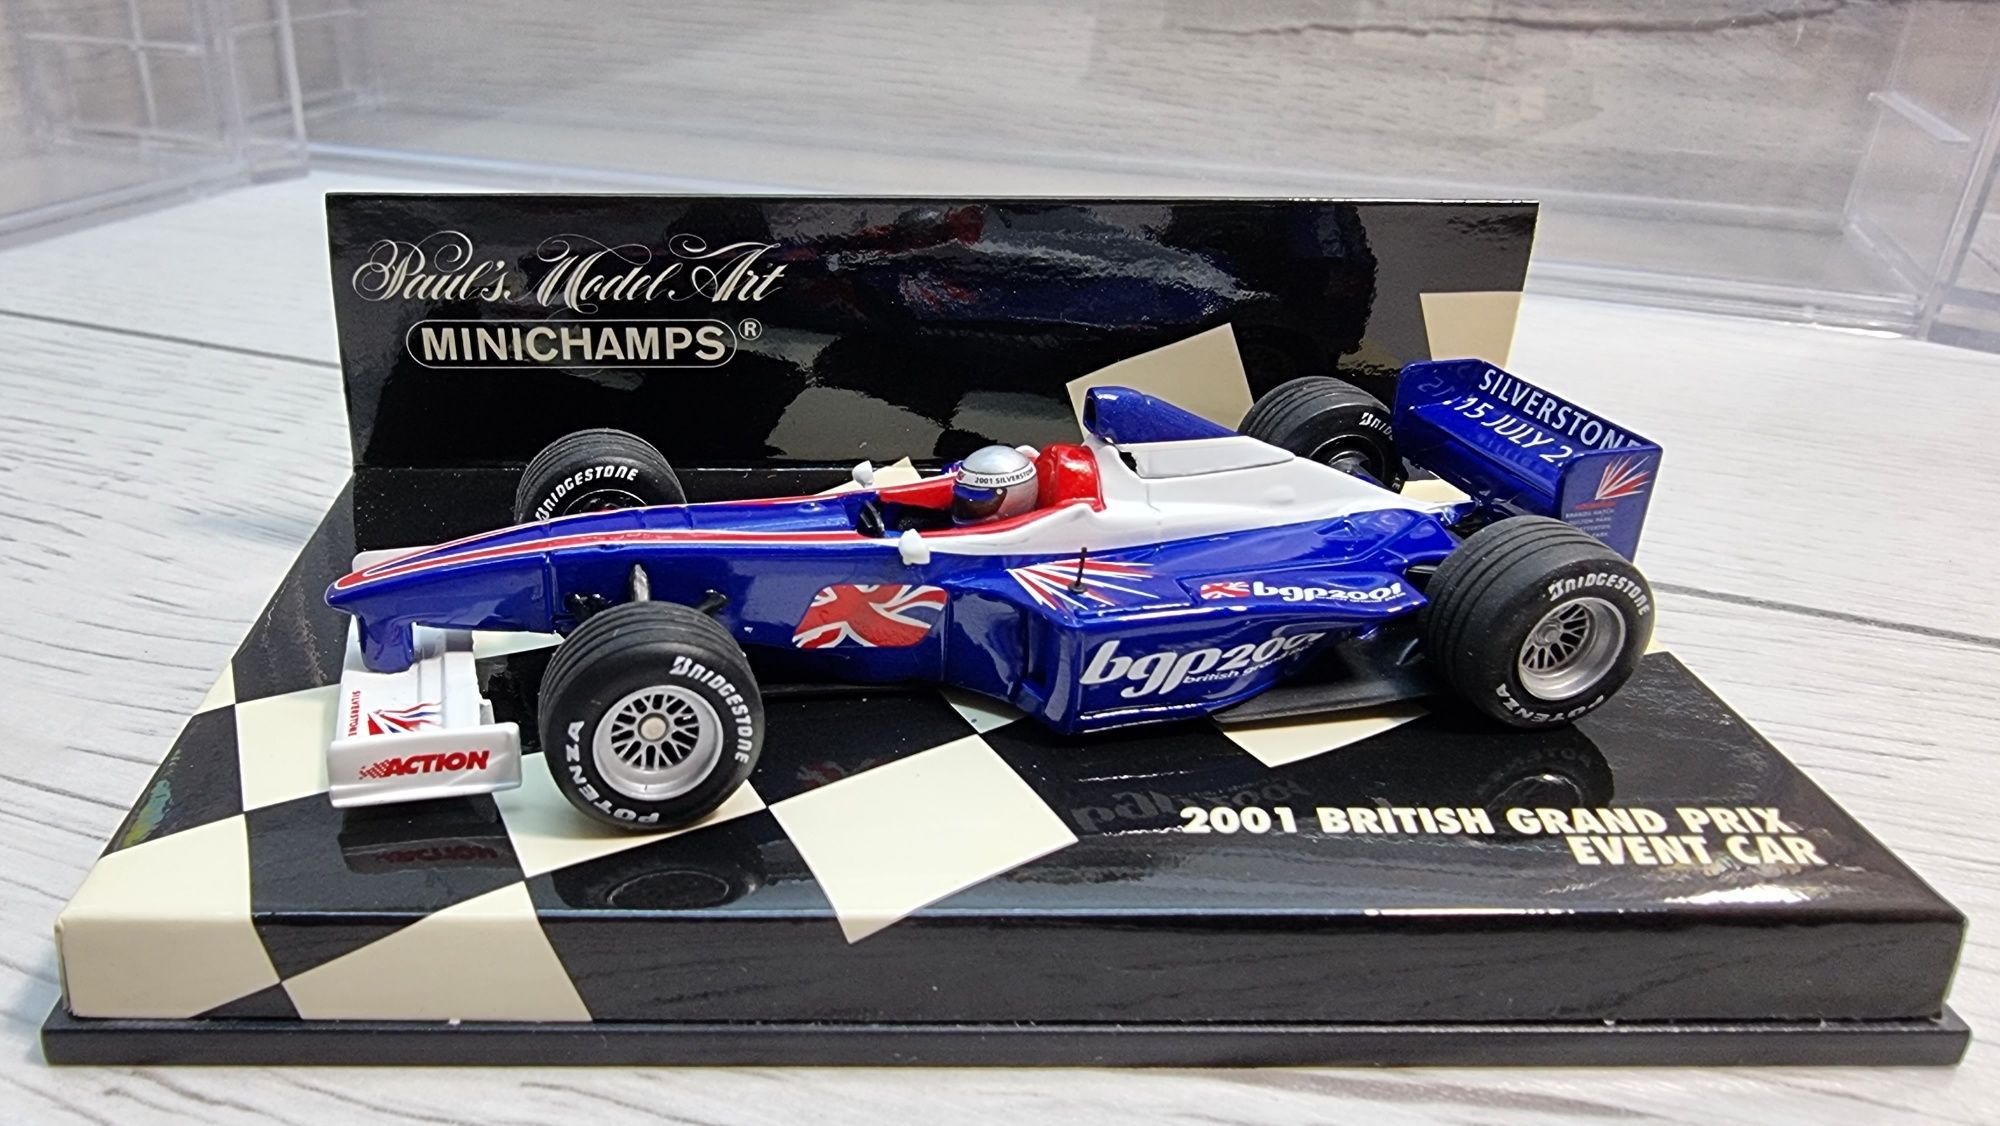 Vand Macheta F1 British Grand Prix 2001, 1:43, Minichamps